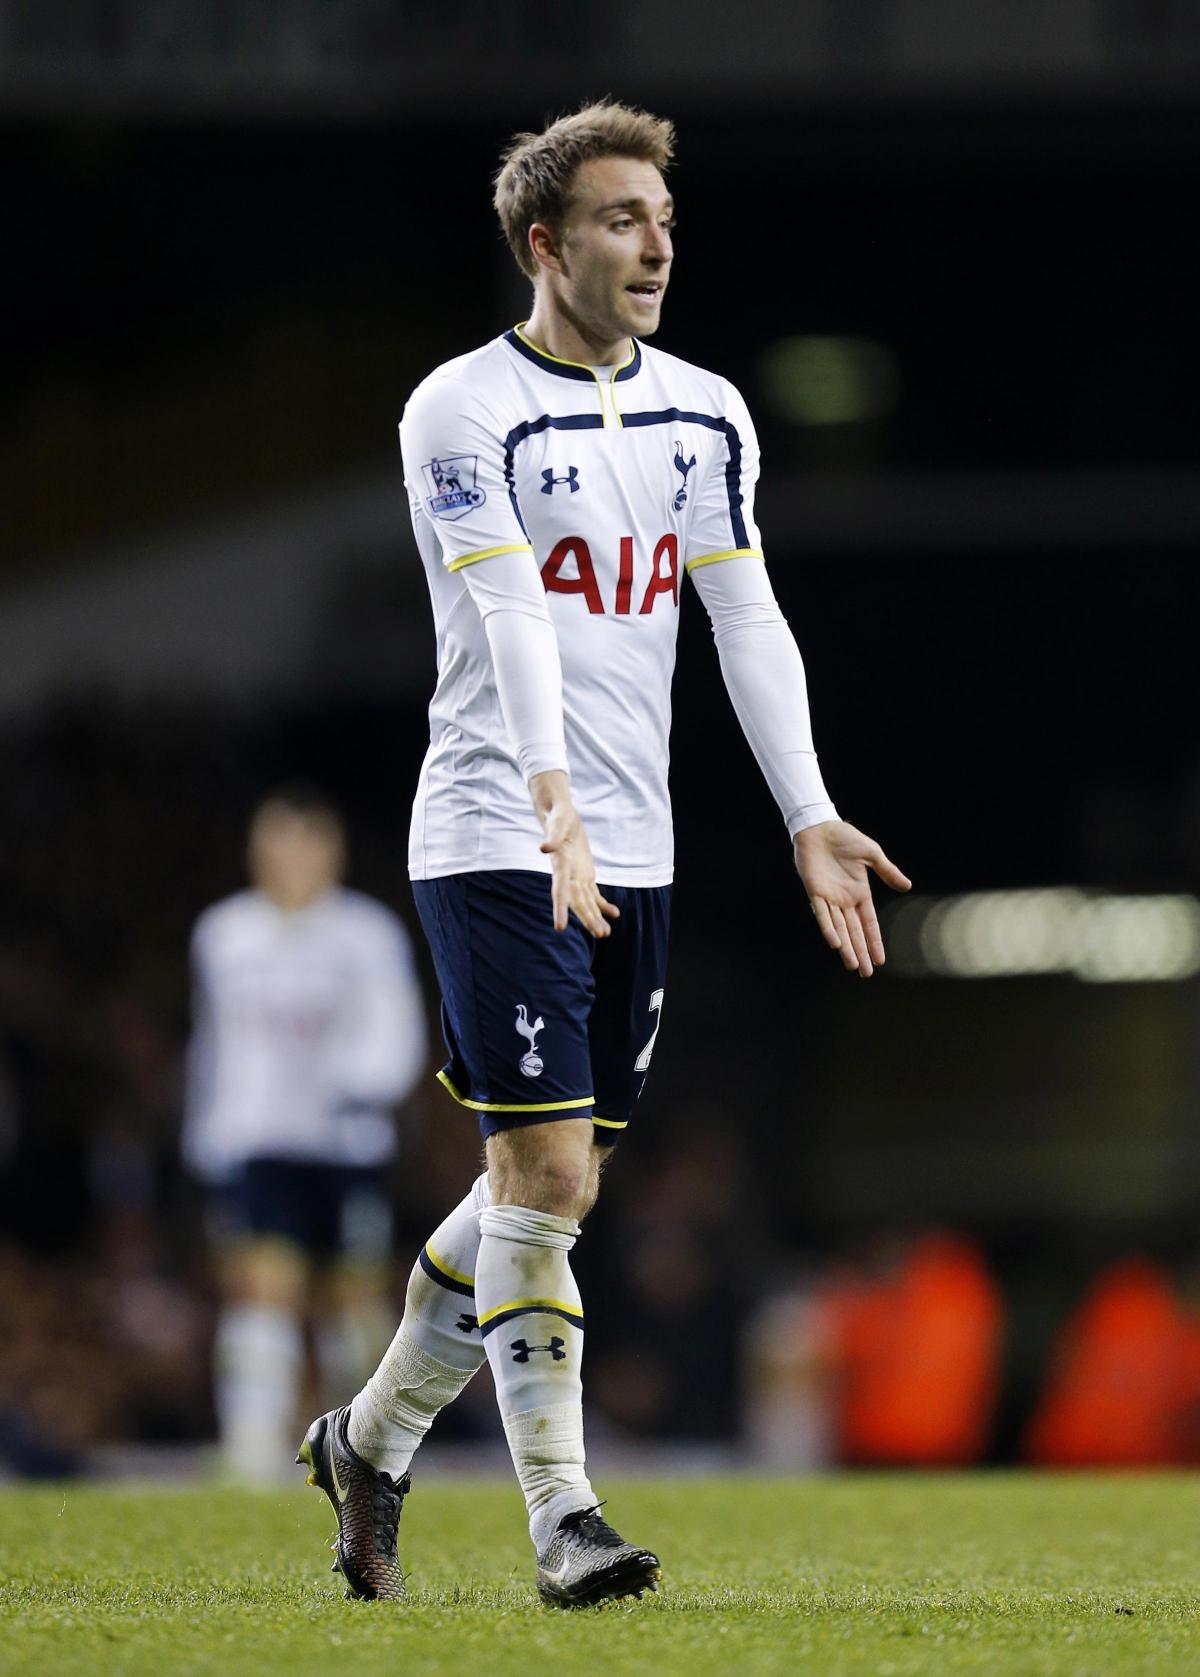 Tottenham Hotspur midfielder Christian Eriksen can become a Spurs